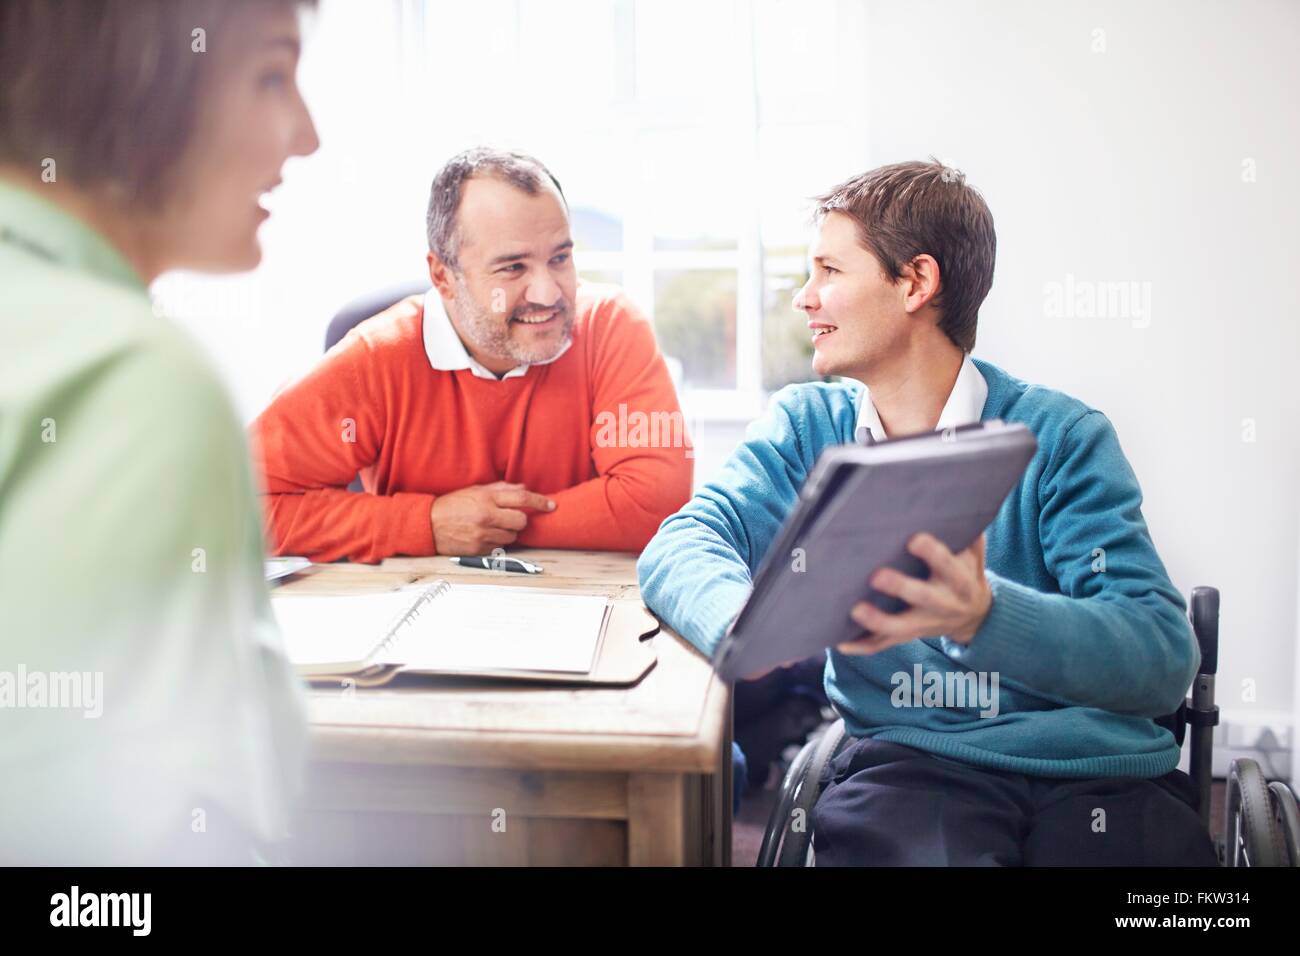 L'homme en fauteuil roulant dans office montrant collègues digital tablet, smiling Banque D'Images